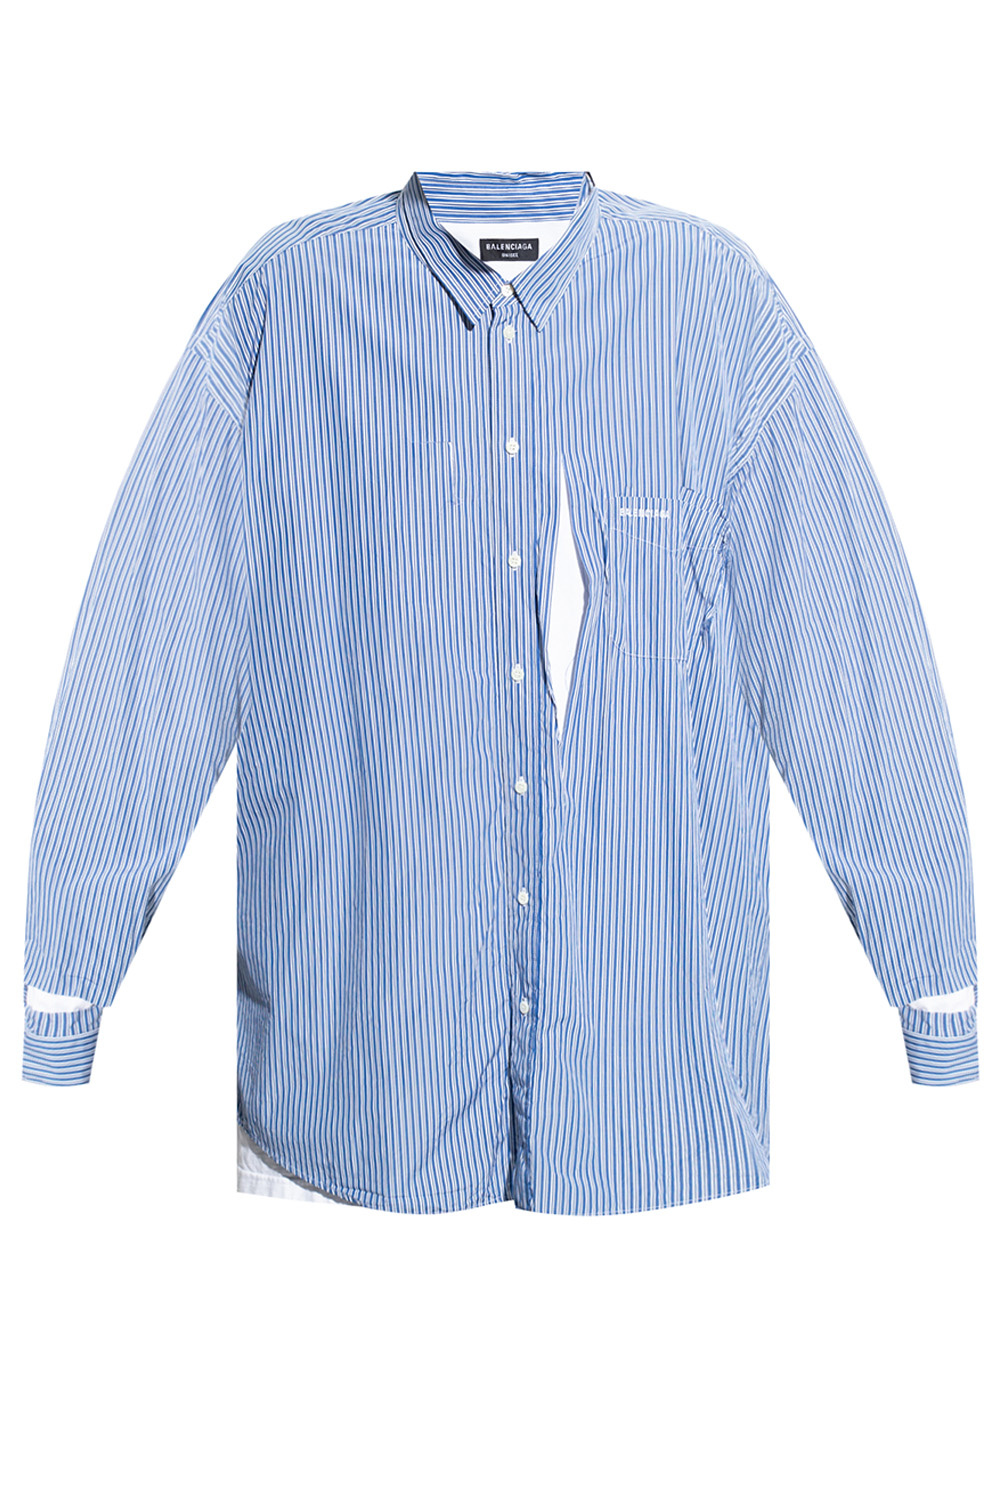 Balenciaga Shirt with logo | Men's Clothing | Vitkac